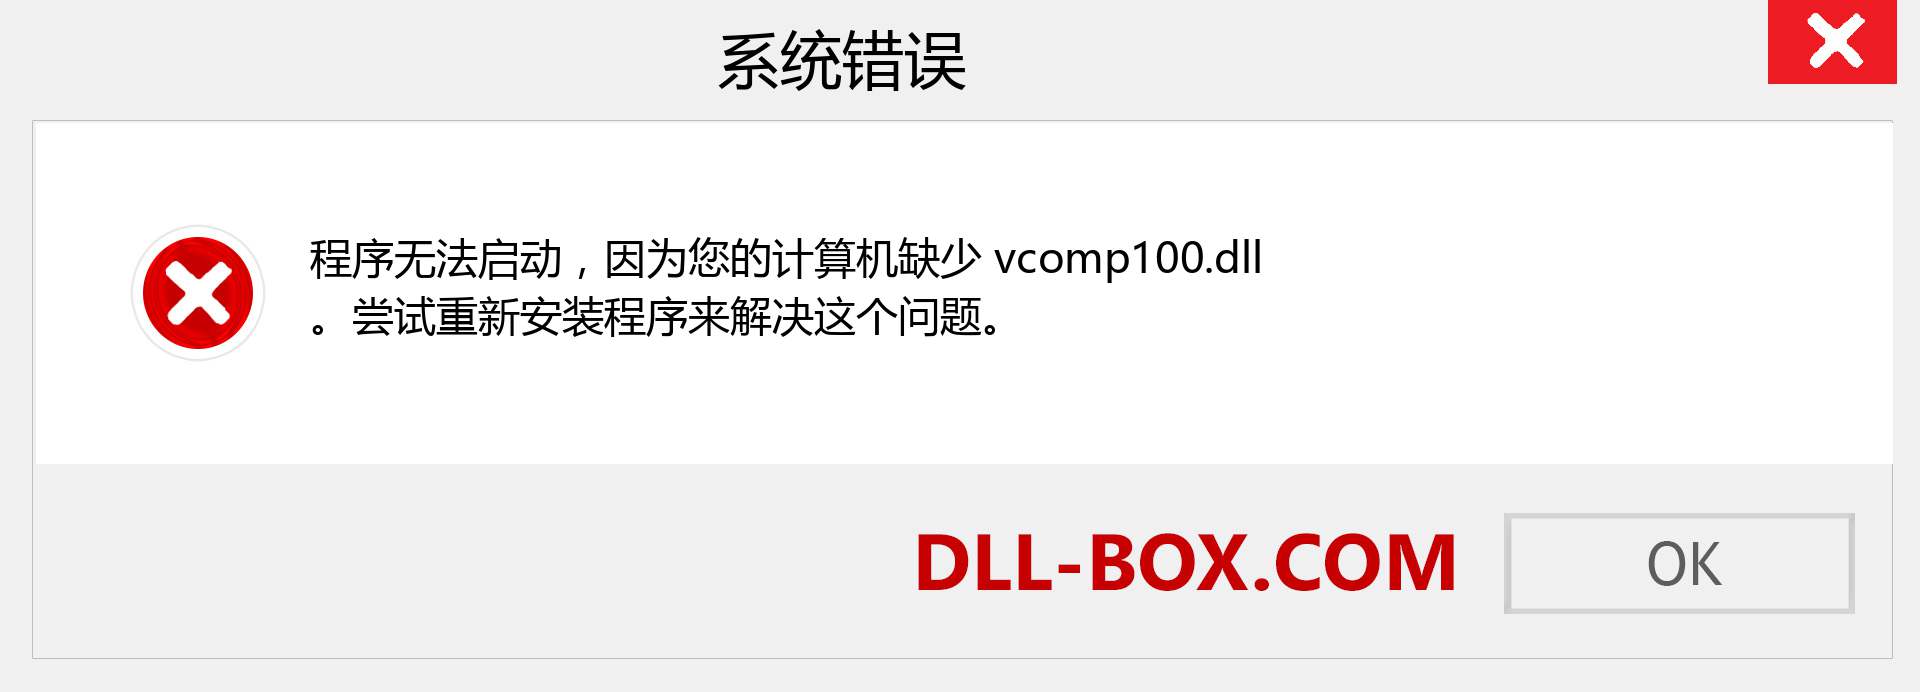 vcomp100.dll 文件丢失？。 适用于 Windows 7、8、10 的下载 - 修复 Windows、照片、图像上的 vcomp100 dll 丢失错误